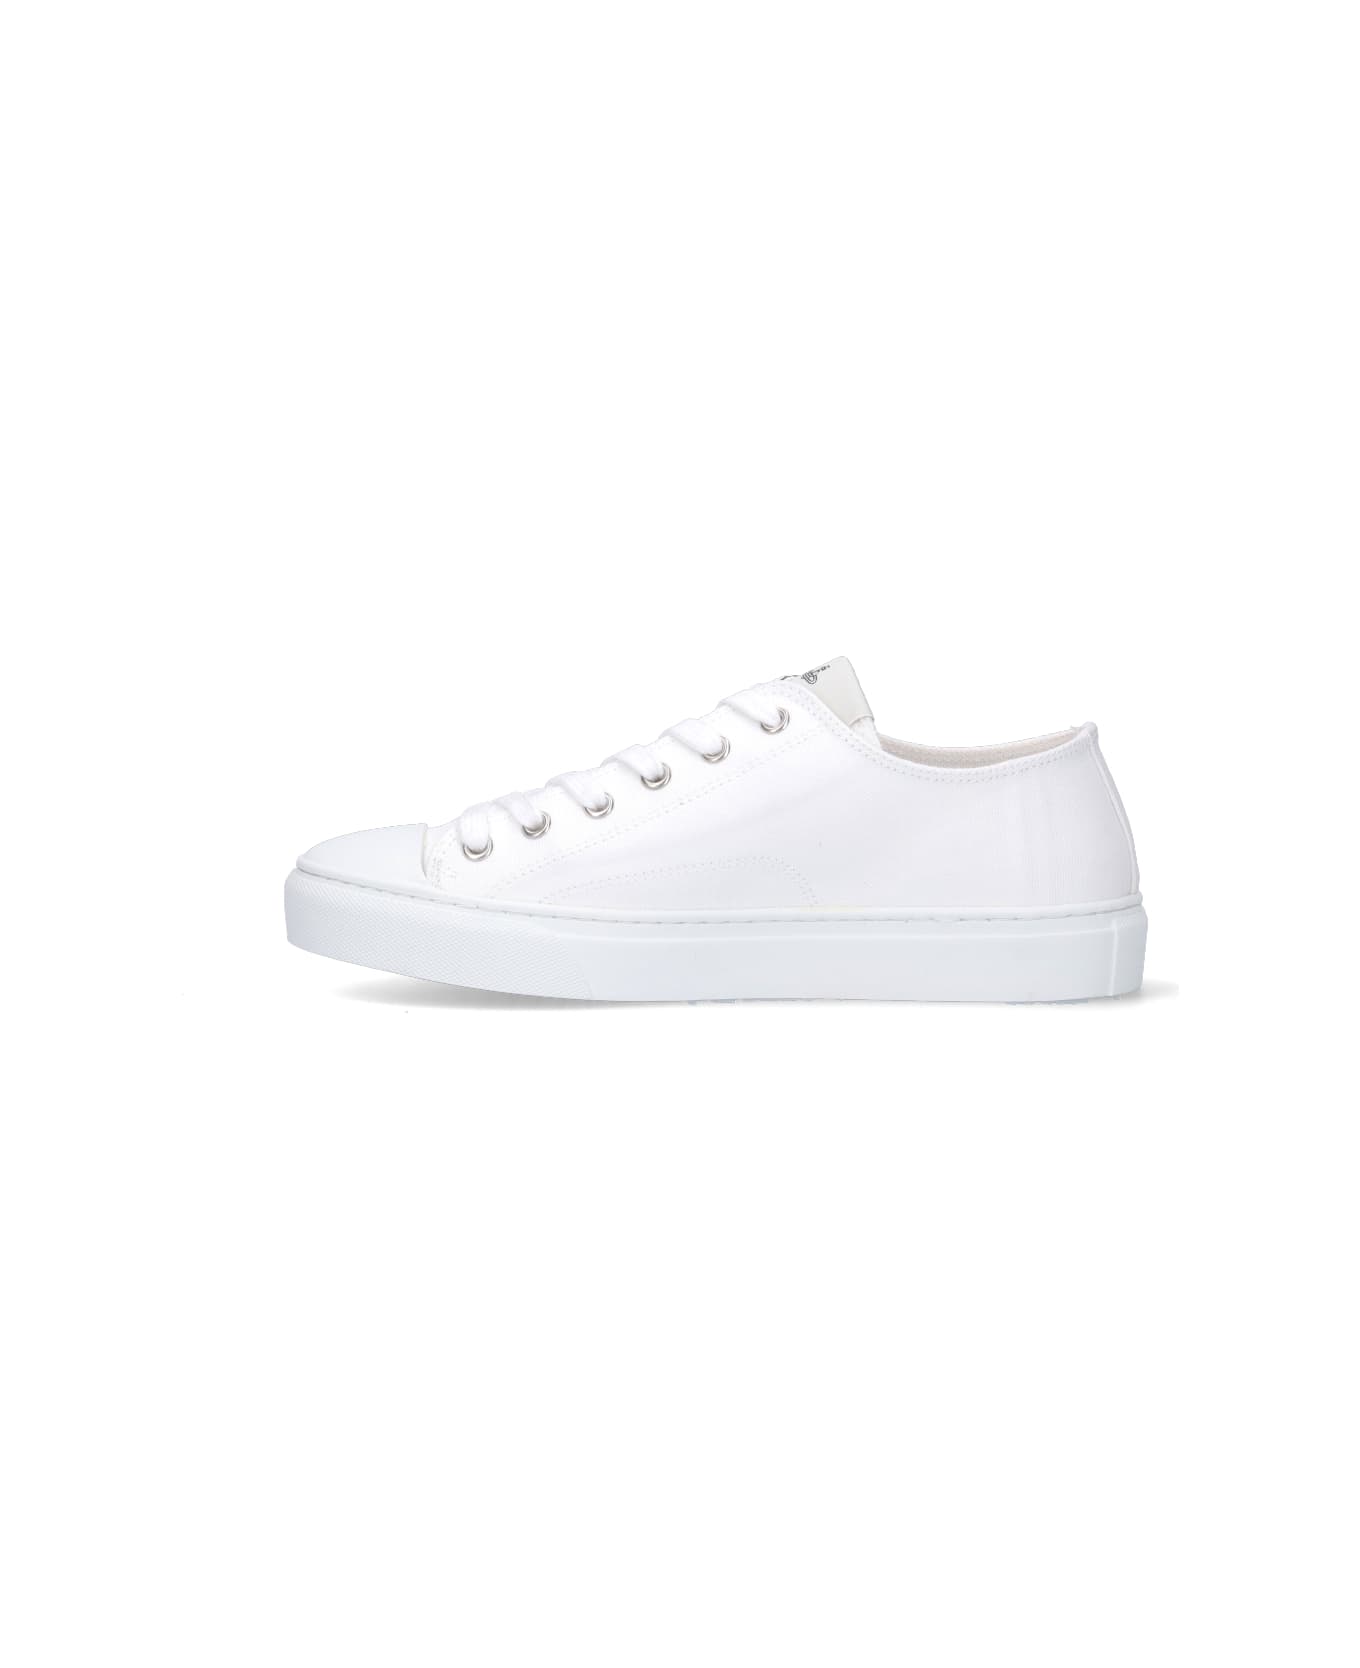 Vivienne Westwood "plimsoll Low Top 2.0" Sneakers - White スニーカー